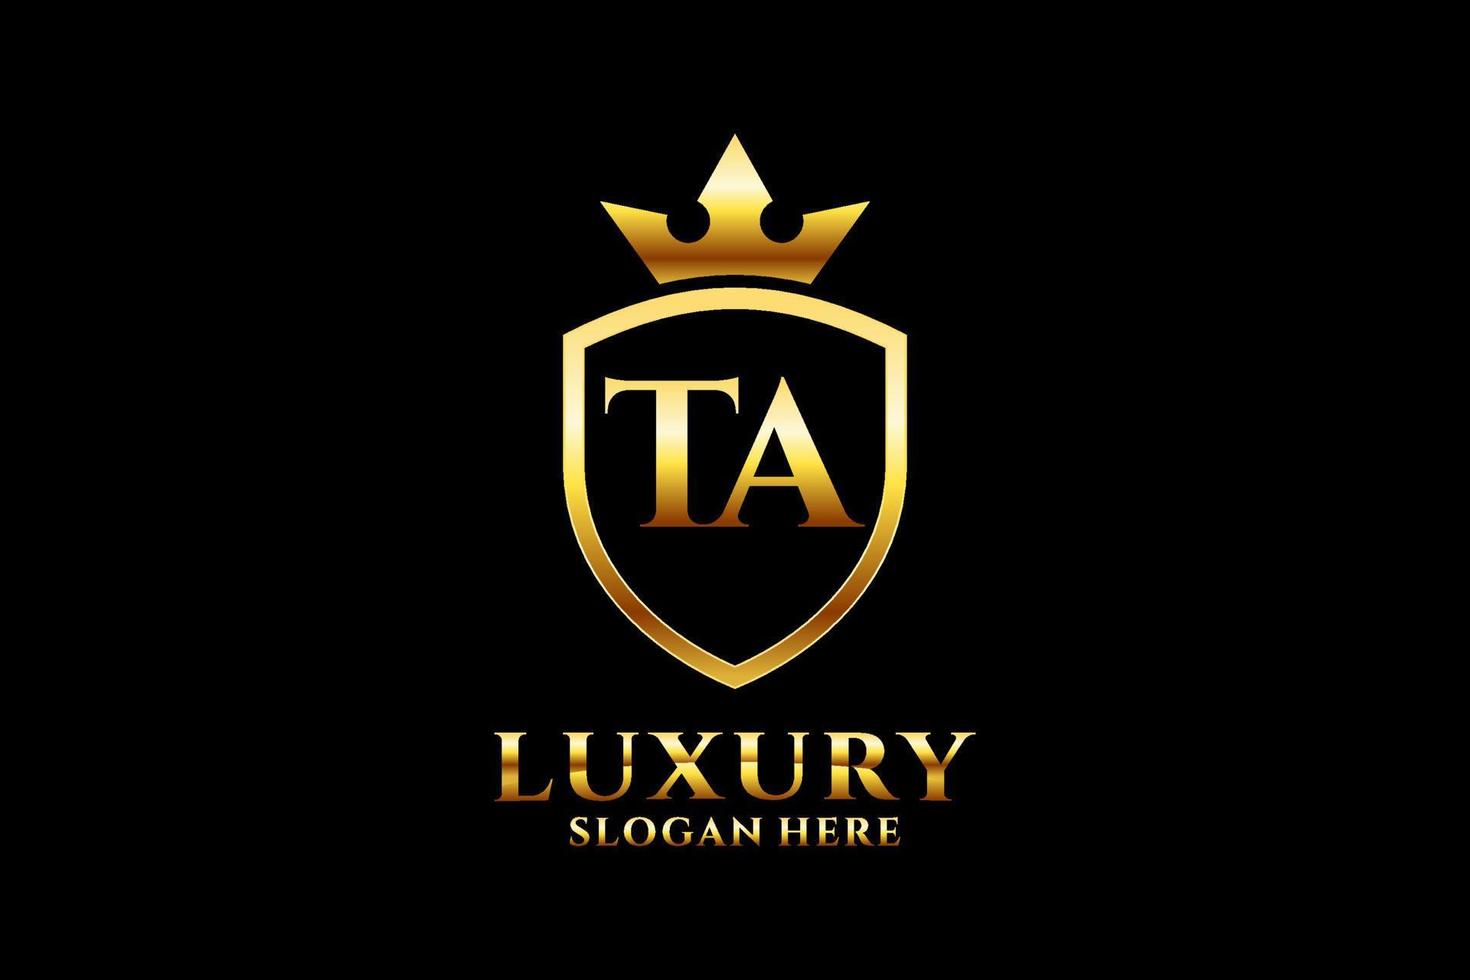 logo monogramme de luxe initial ta élégant ou modèle de badge avec volutes et couronne royale - parfait pour les projets de marque de luxe vecteur